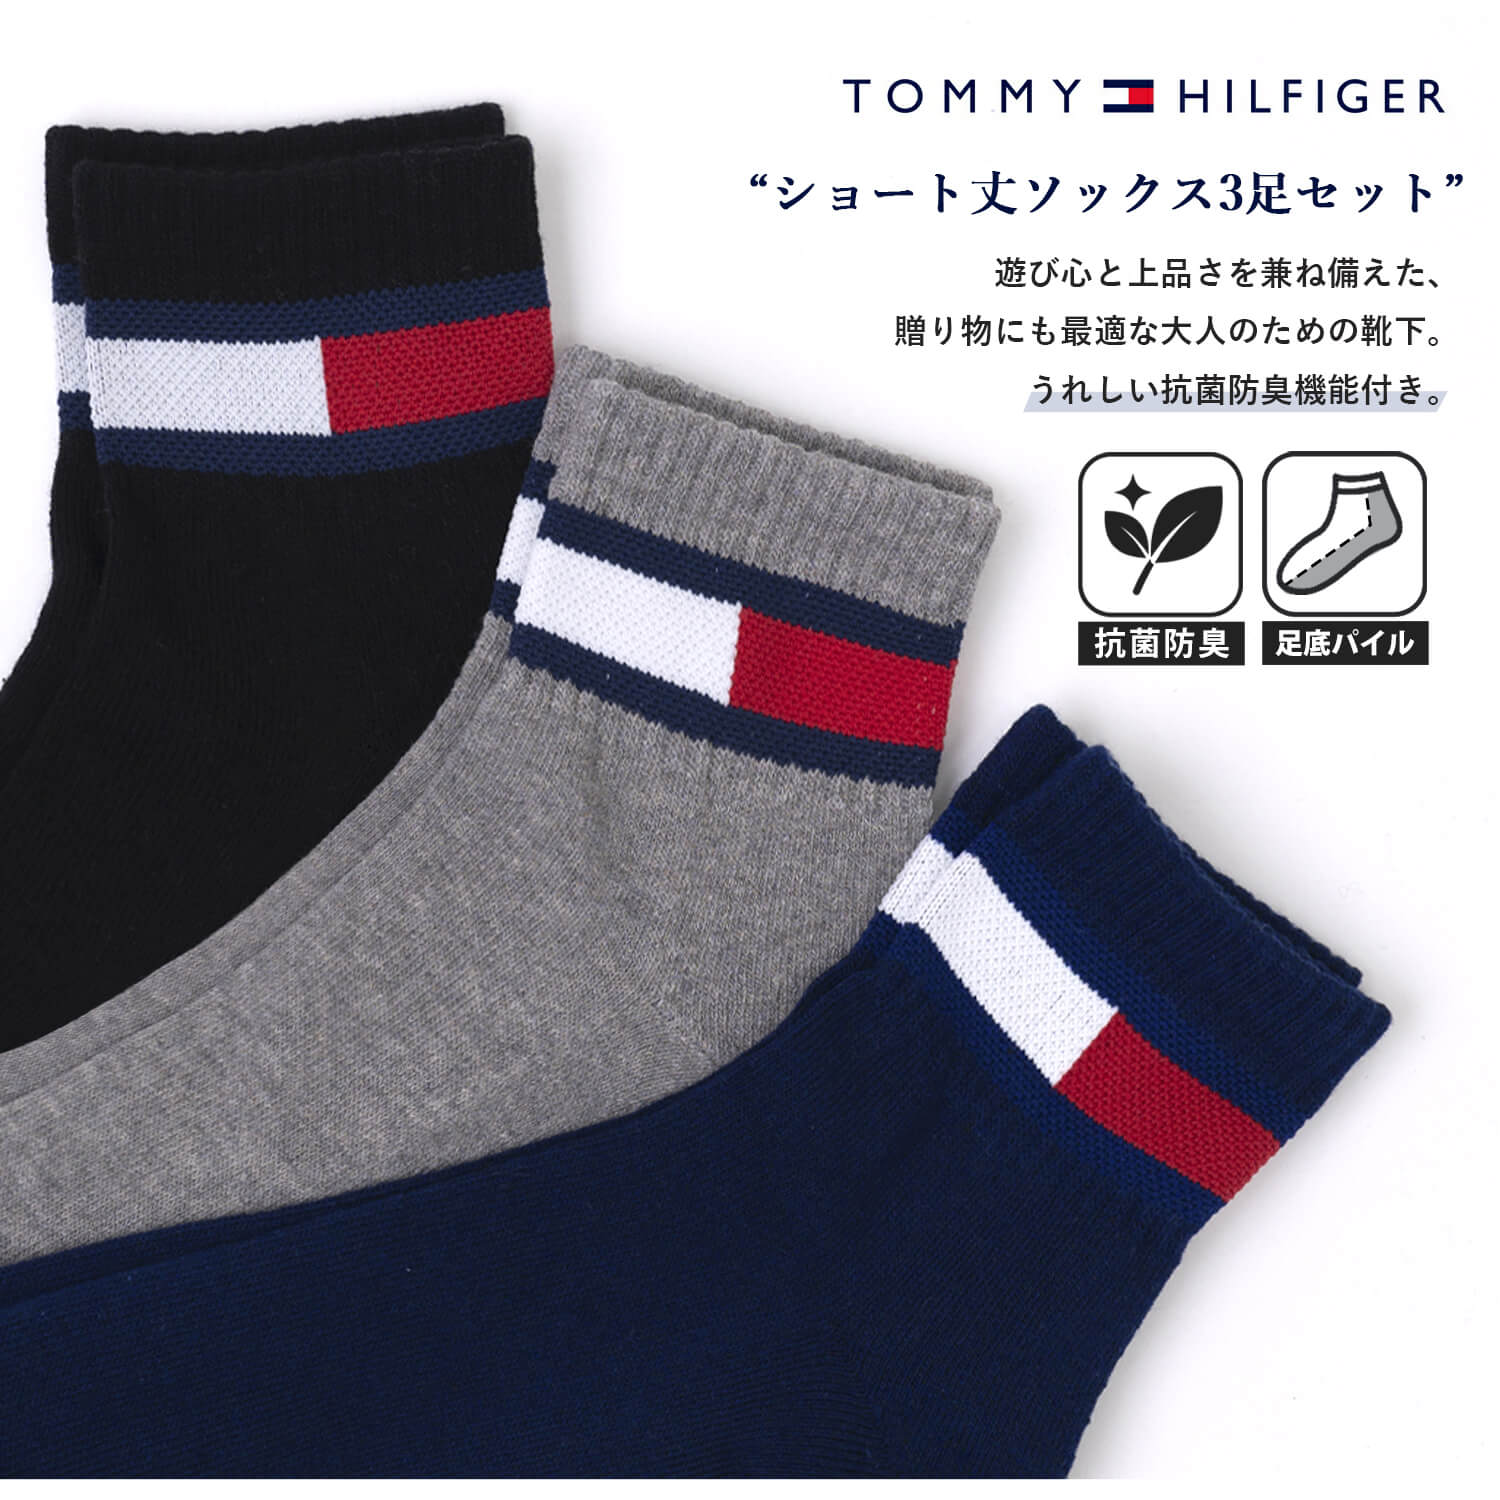 TOMMY HILFIGER トミーヒルフィガー 靴下 メンズ レディース 3足セット